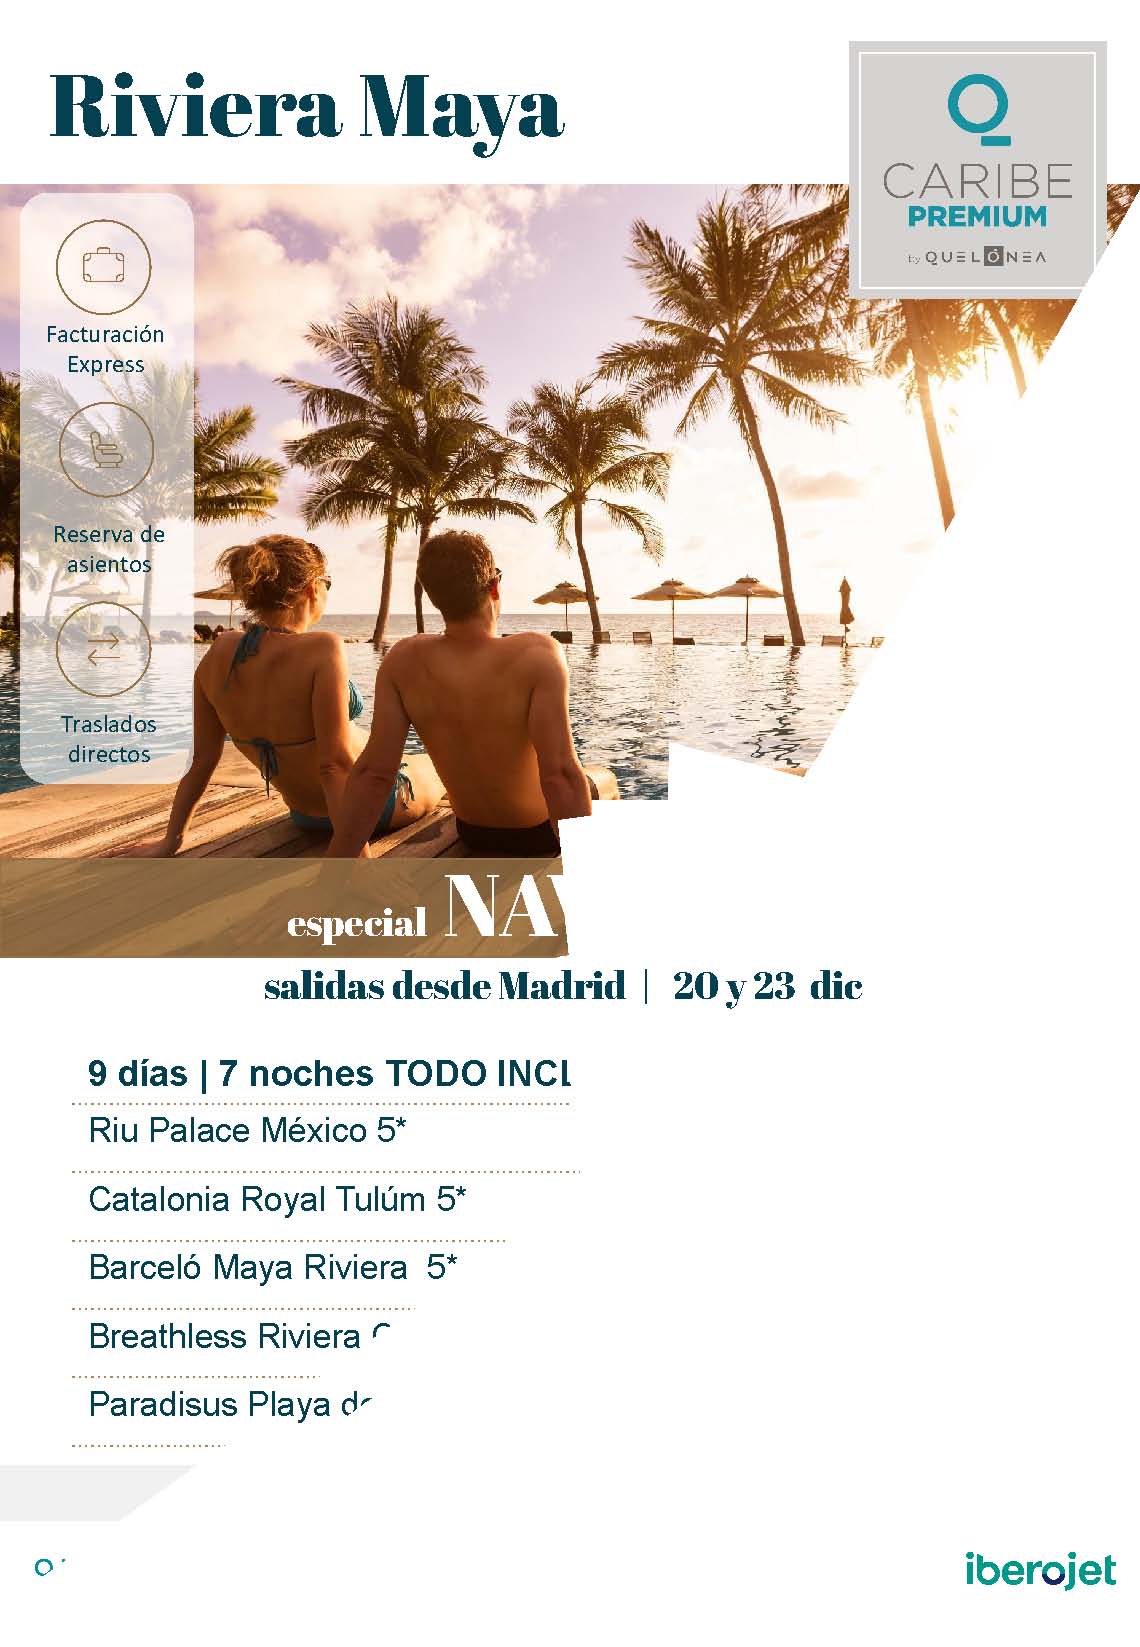 Ofertas Quelonea Caribe Premium Navidad 2021 en Riviera Maya Mexico salida en vuelo directo desde Madrid